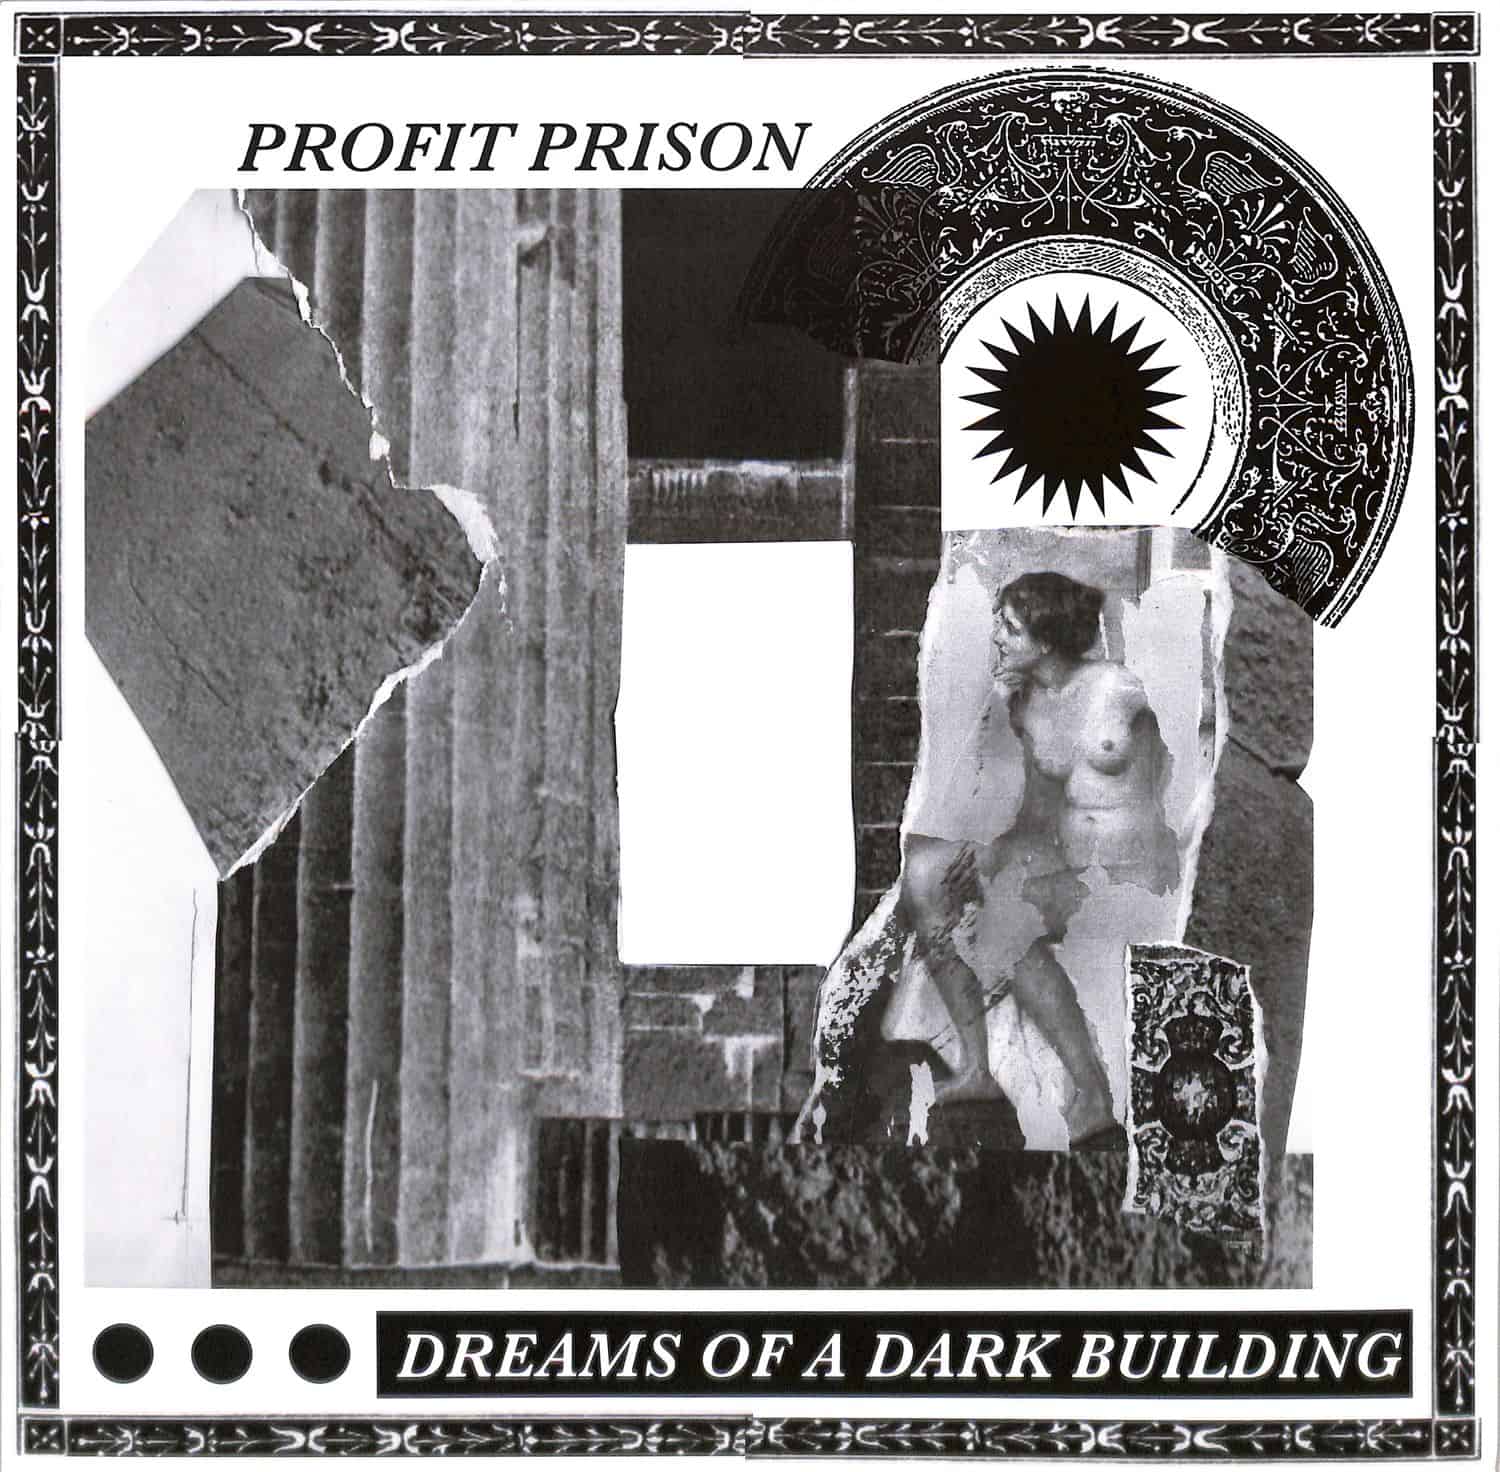 Profit Prison - DREAMS OF A DARK BUILDING EP